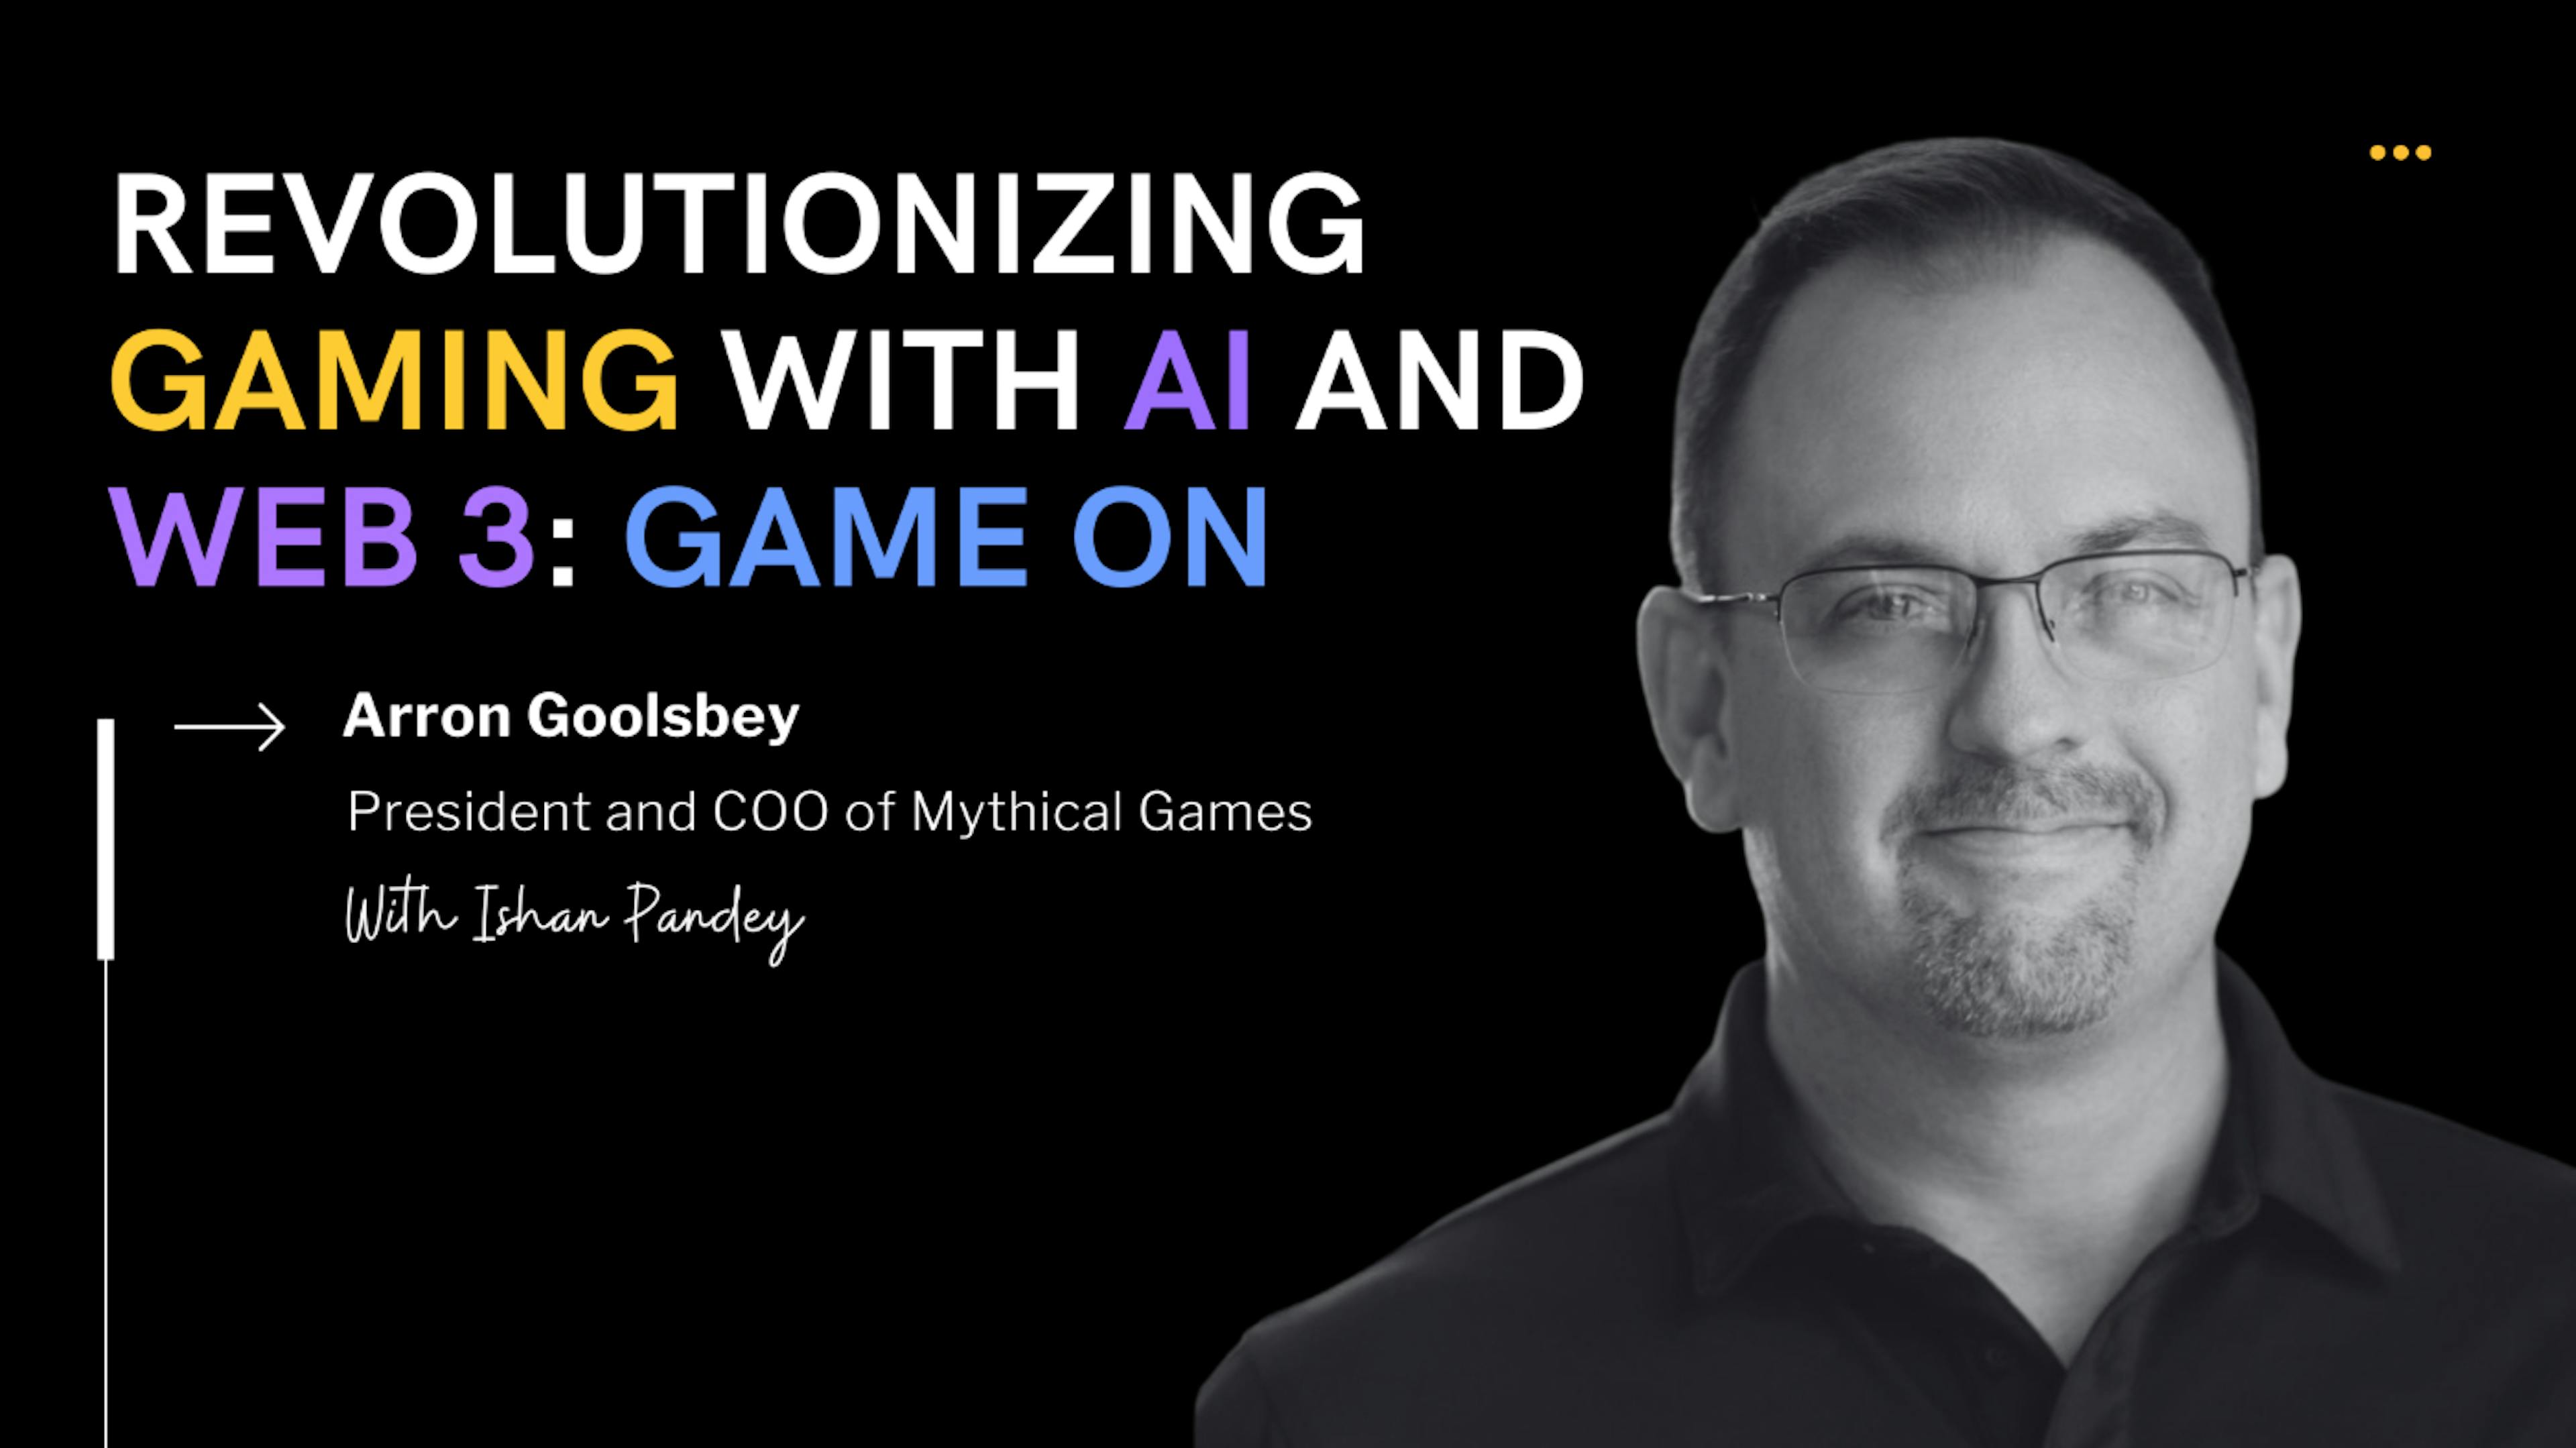 featured image - Arron Goolsbey habla sobre el futuro de los juegos con IA y Blockchain en Mythical Games